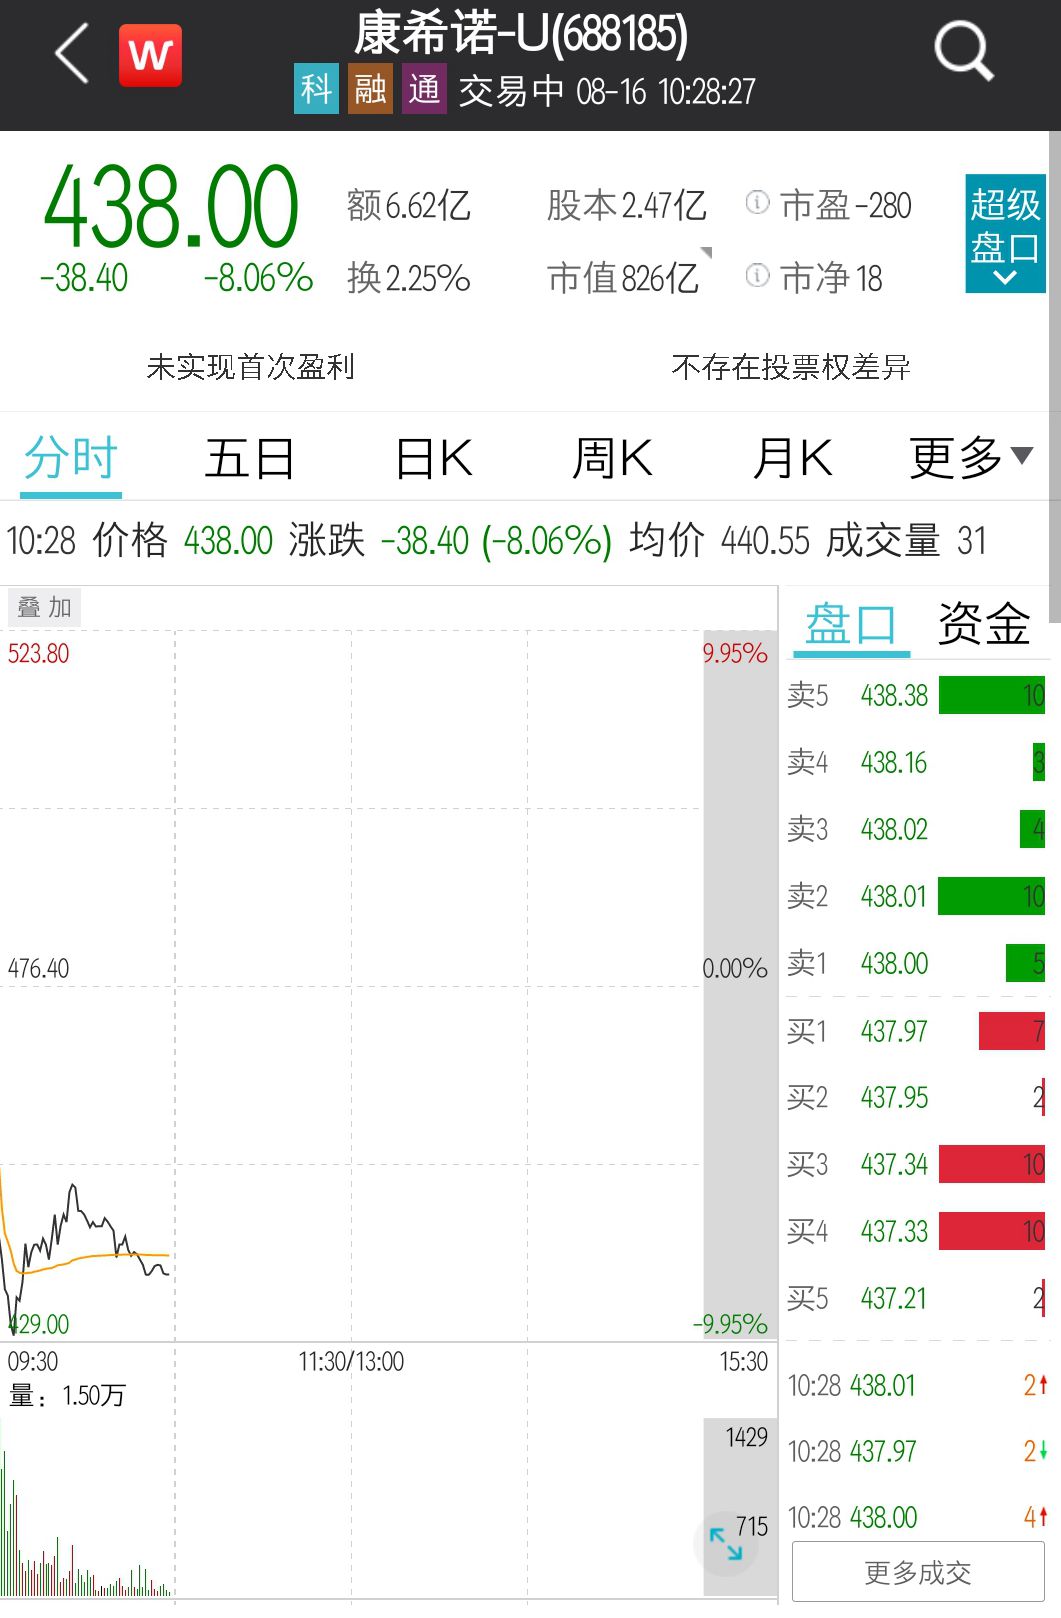 “康希诺遭股东“清仓式”减持 股价大跌8%